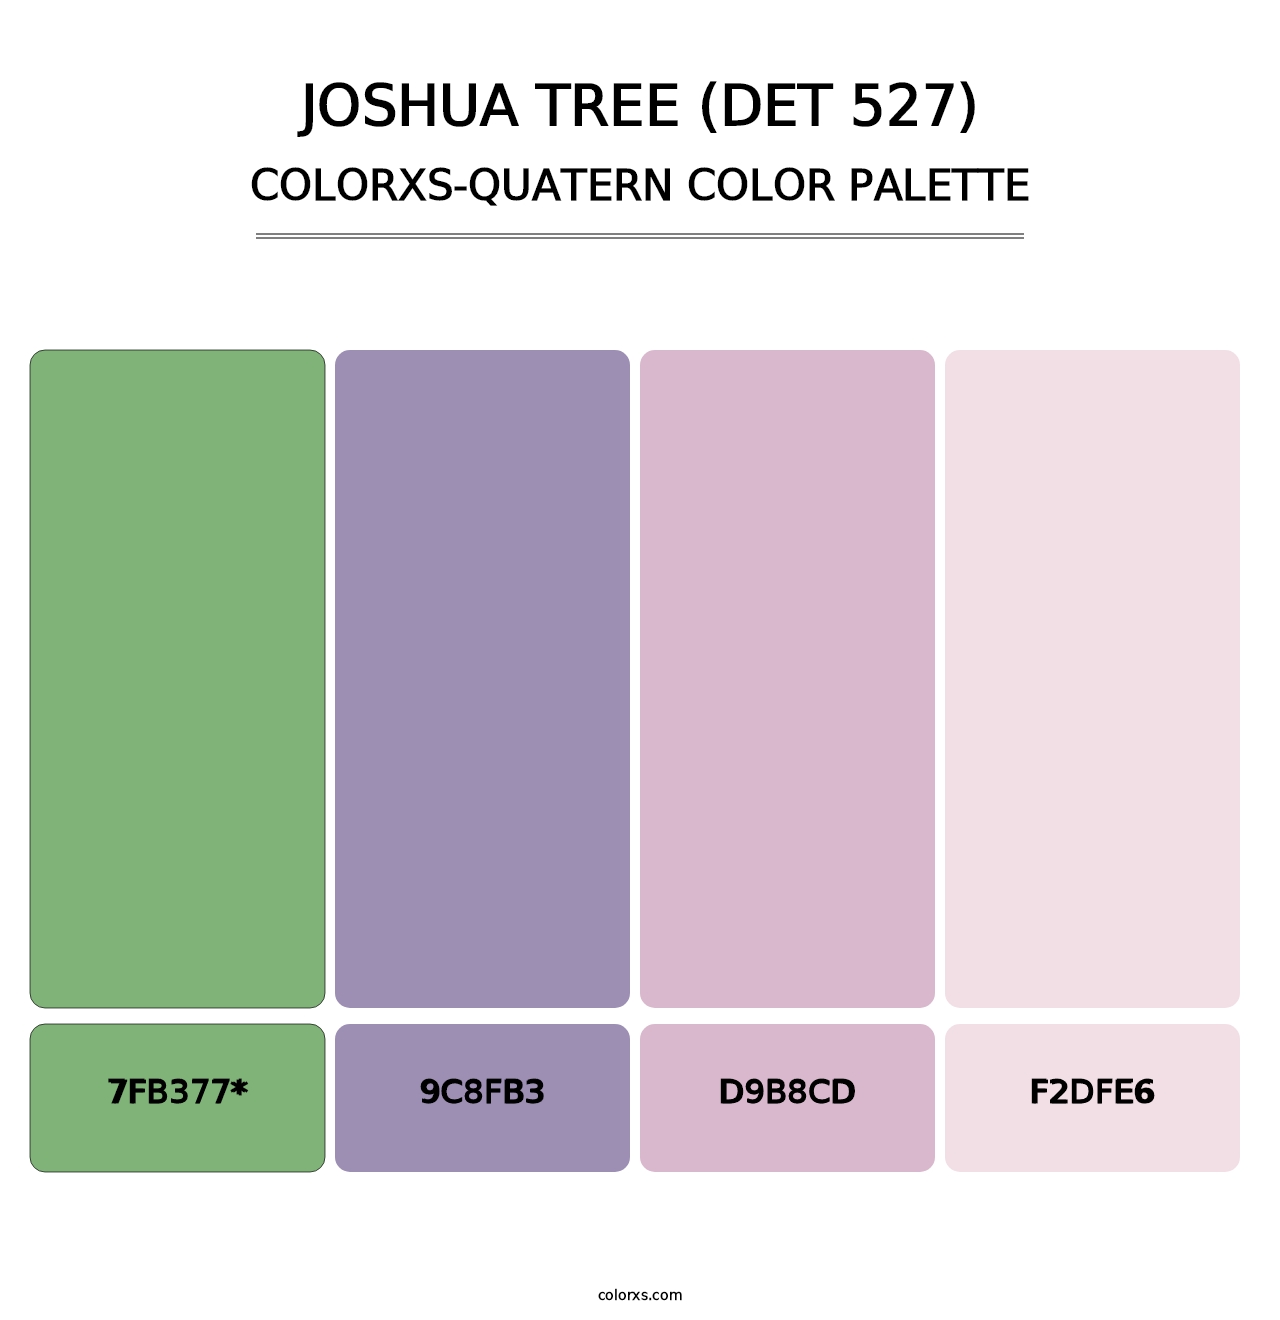 Joshua Tree (DET 527) - Colorxs Quatern Palette